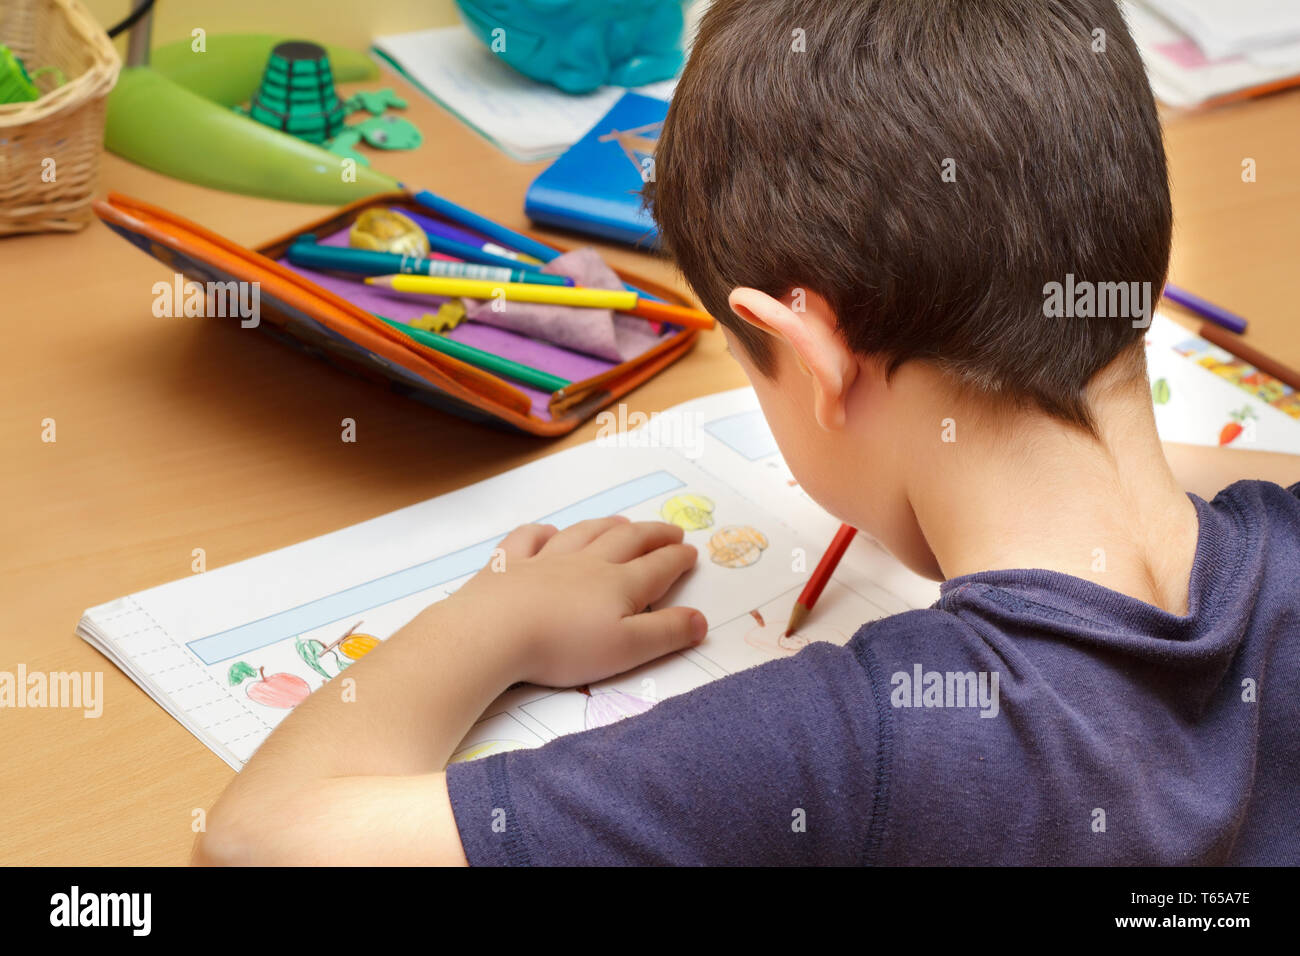 Boy doing homework avec crayon de couleur Banque D'Images